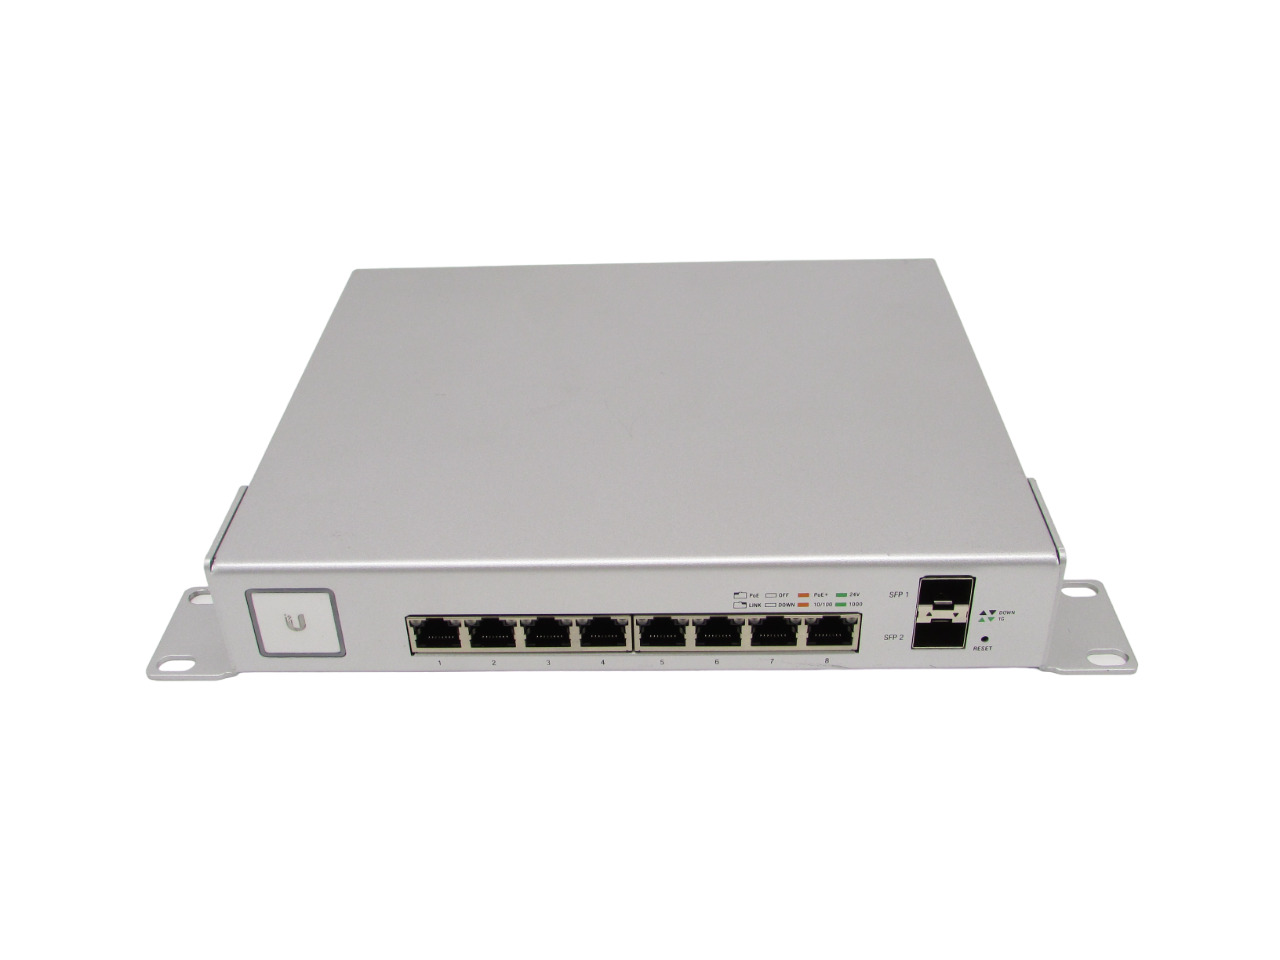 Ubiquiti UniFi US-8-150W 8-Port PoE Gigabit Ethernet Switch Tested